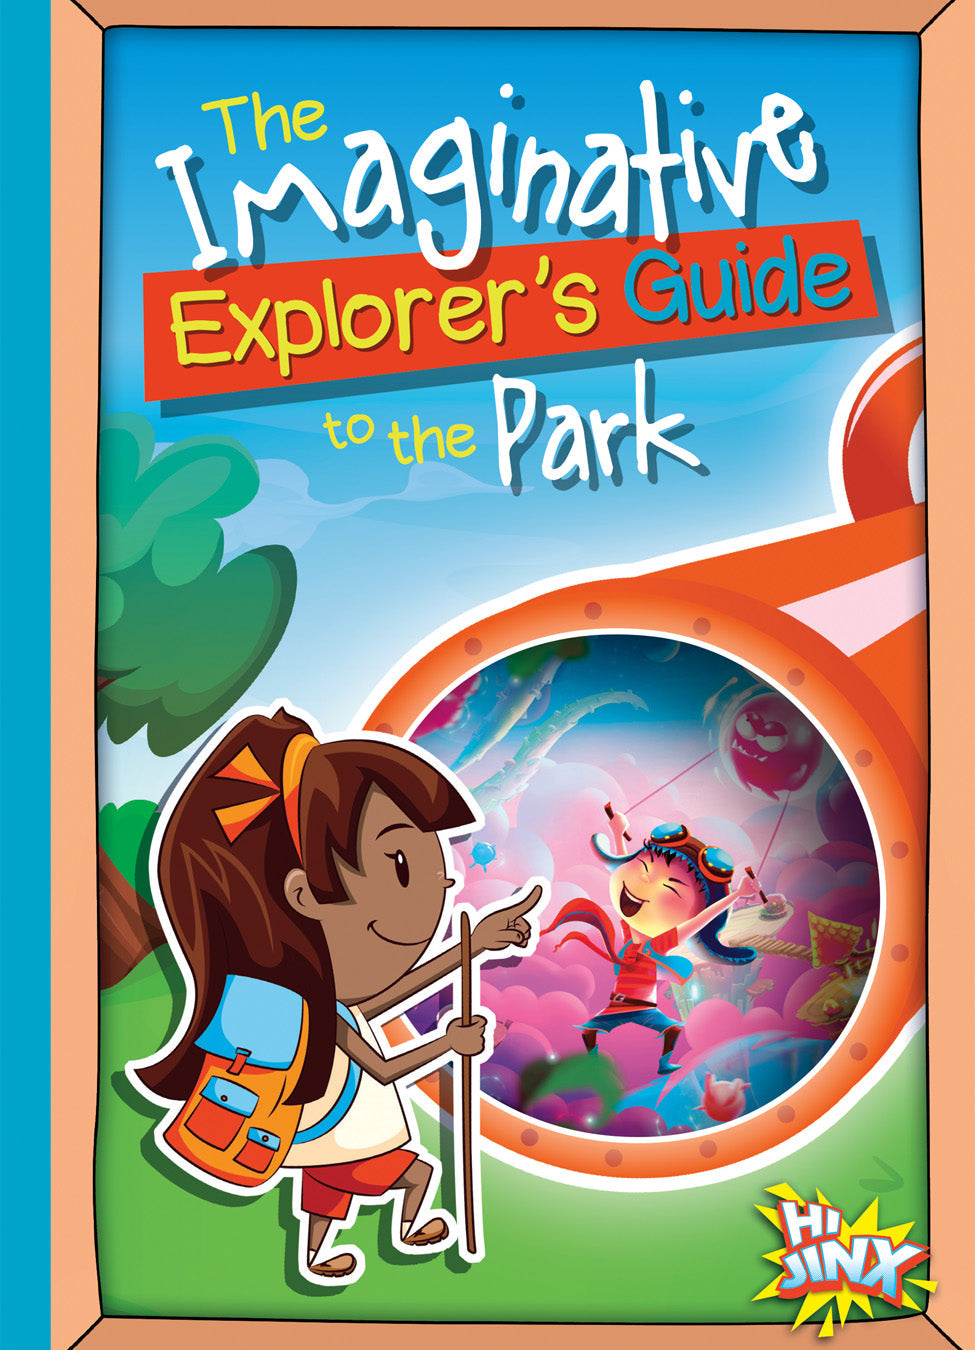 The Imaginative Explorer's Guide: The Imaginative Explorer's Guide to the Park